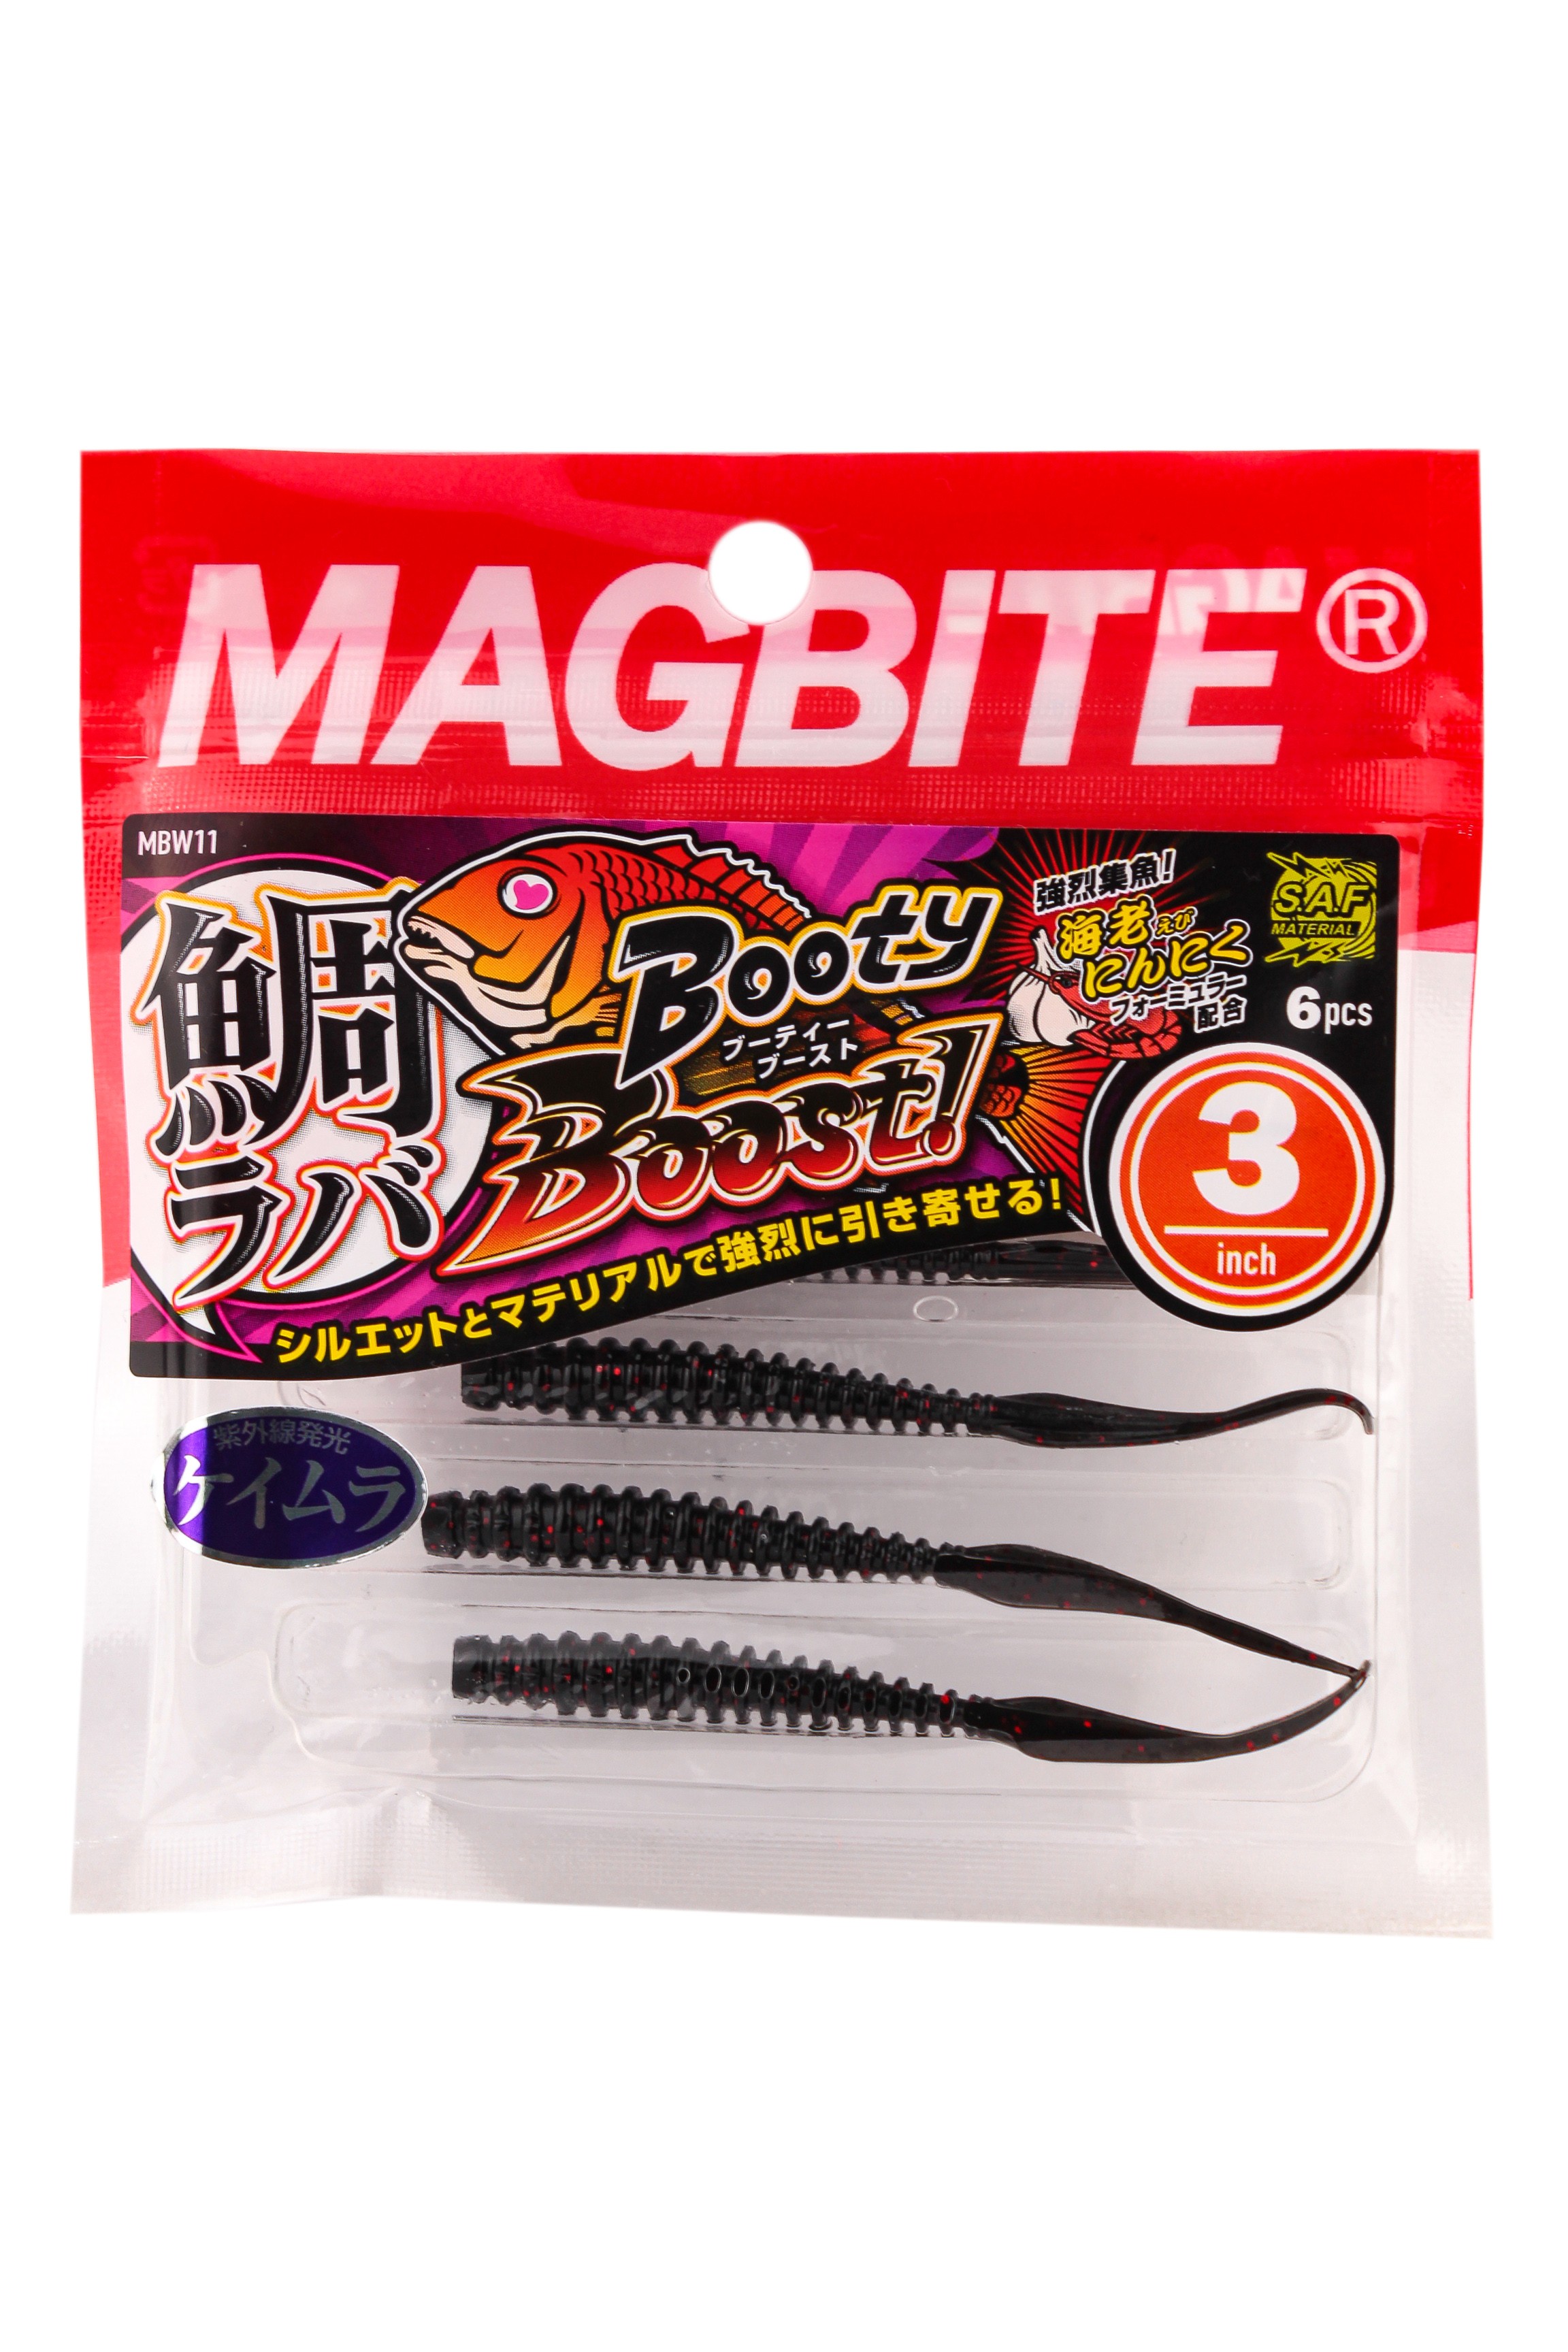 Приманка Magbite MBW11 Tairaba Booty Boost 3,0" цв.28 - фото 1